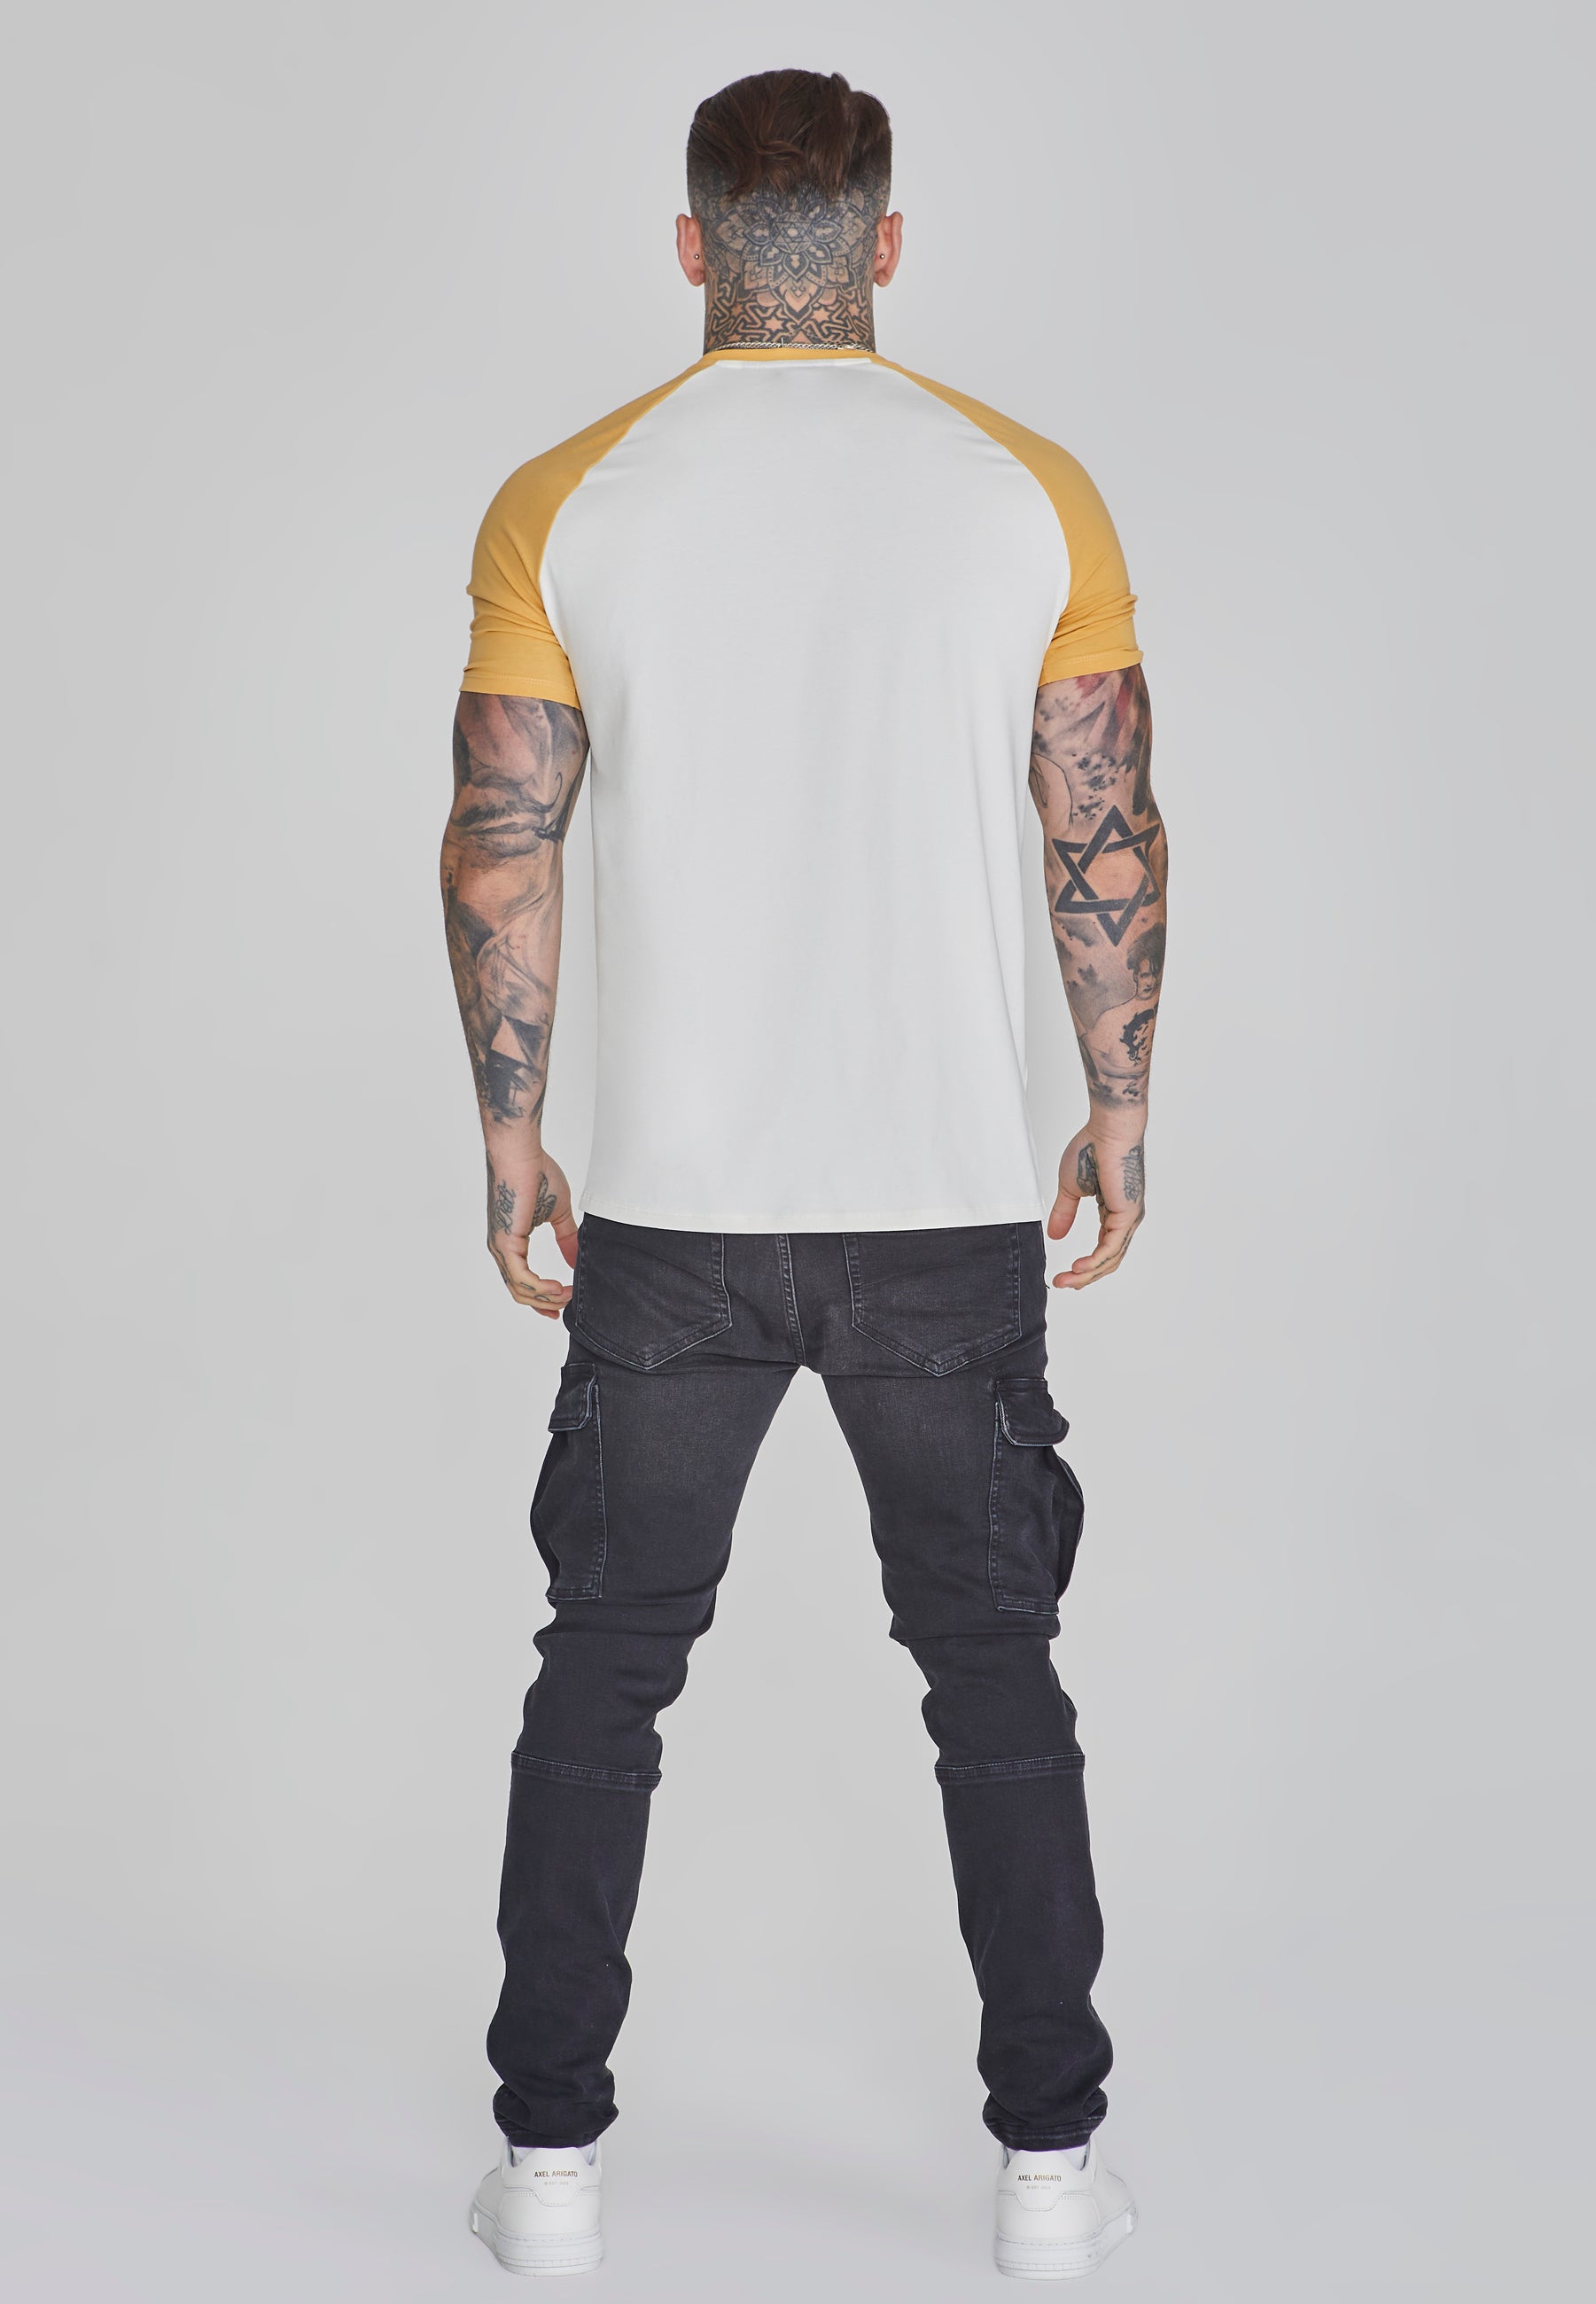 Raglan T-Shirt in Ecru/Yellow